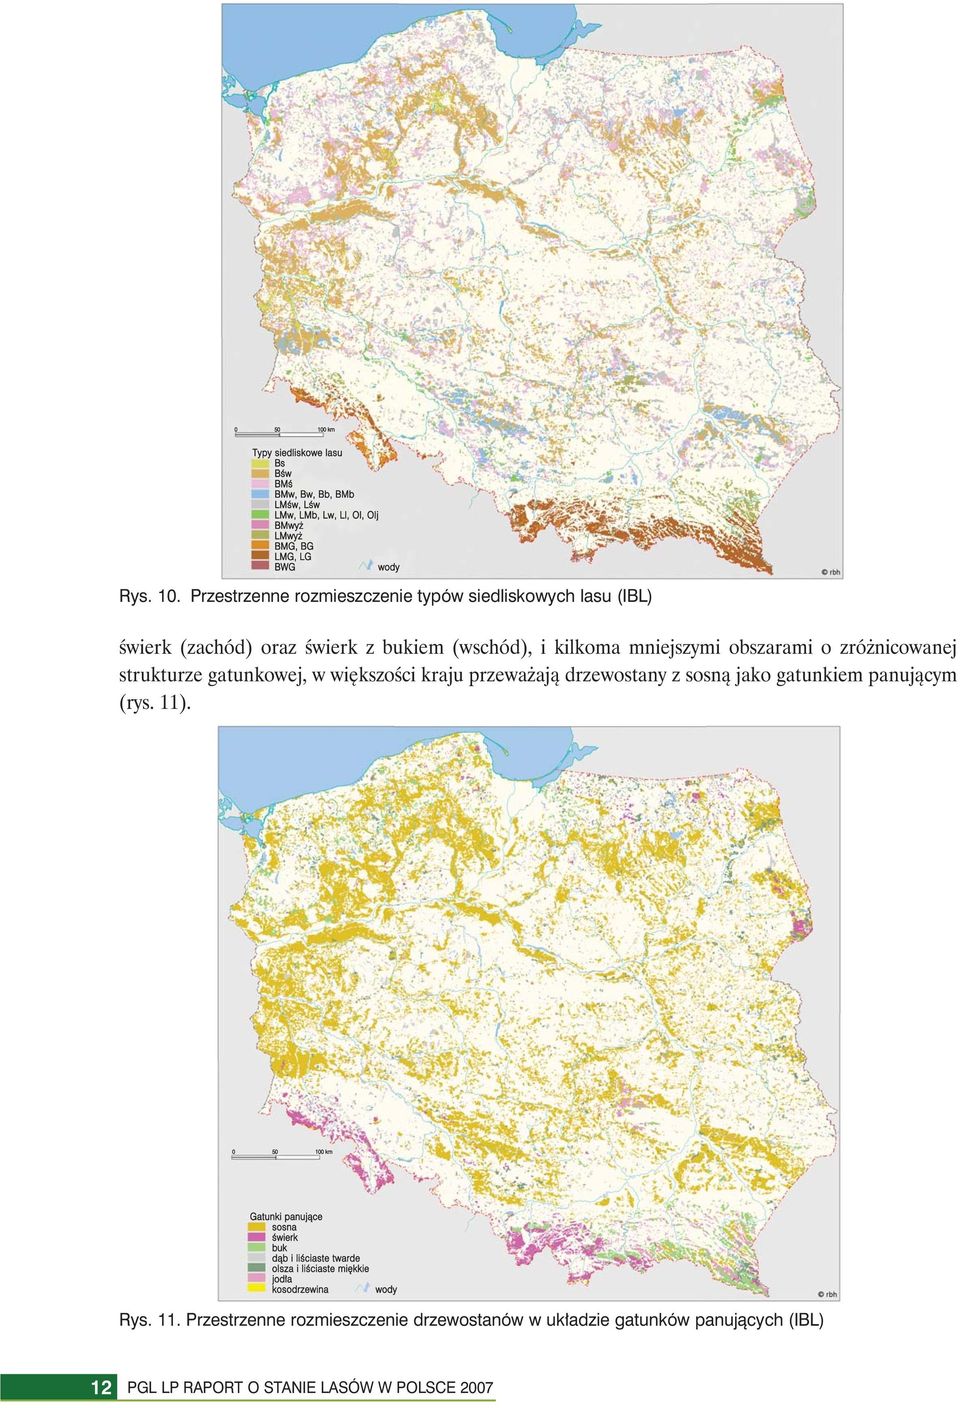 Przestrzenne rozmieszczenie typów siedliskowych lasu (IBL) świerk (zachód) oraz świerk z bukiem (wschód), i kilkoma mniejszymi obszarami o zróżnicowanej